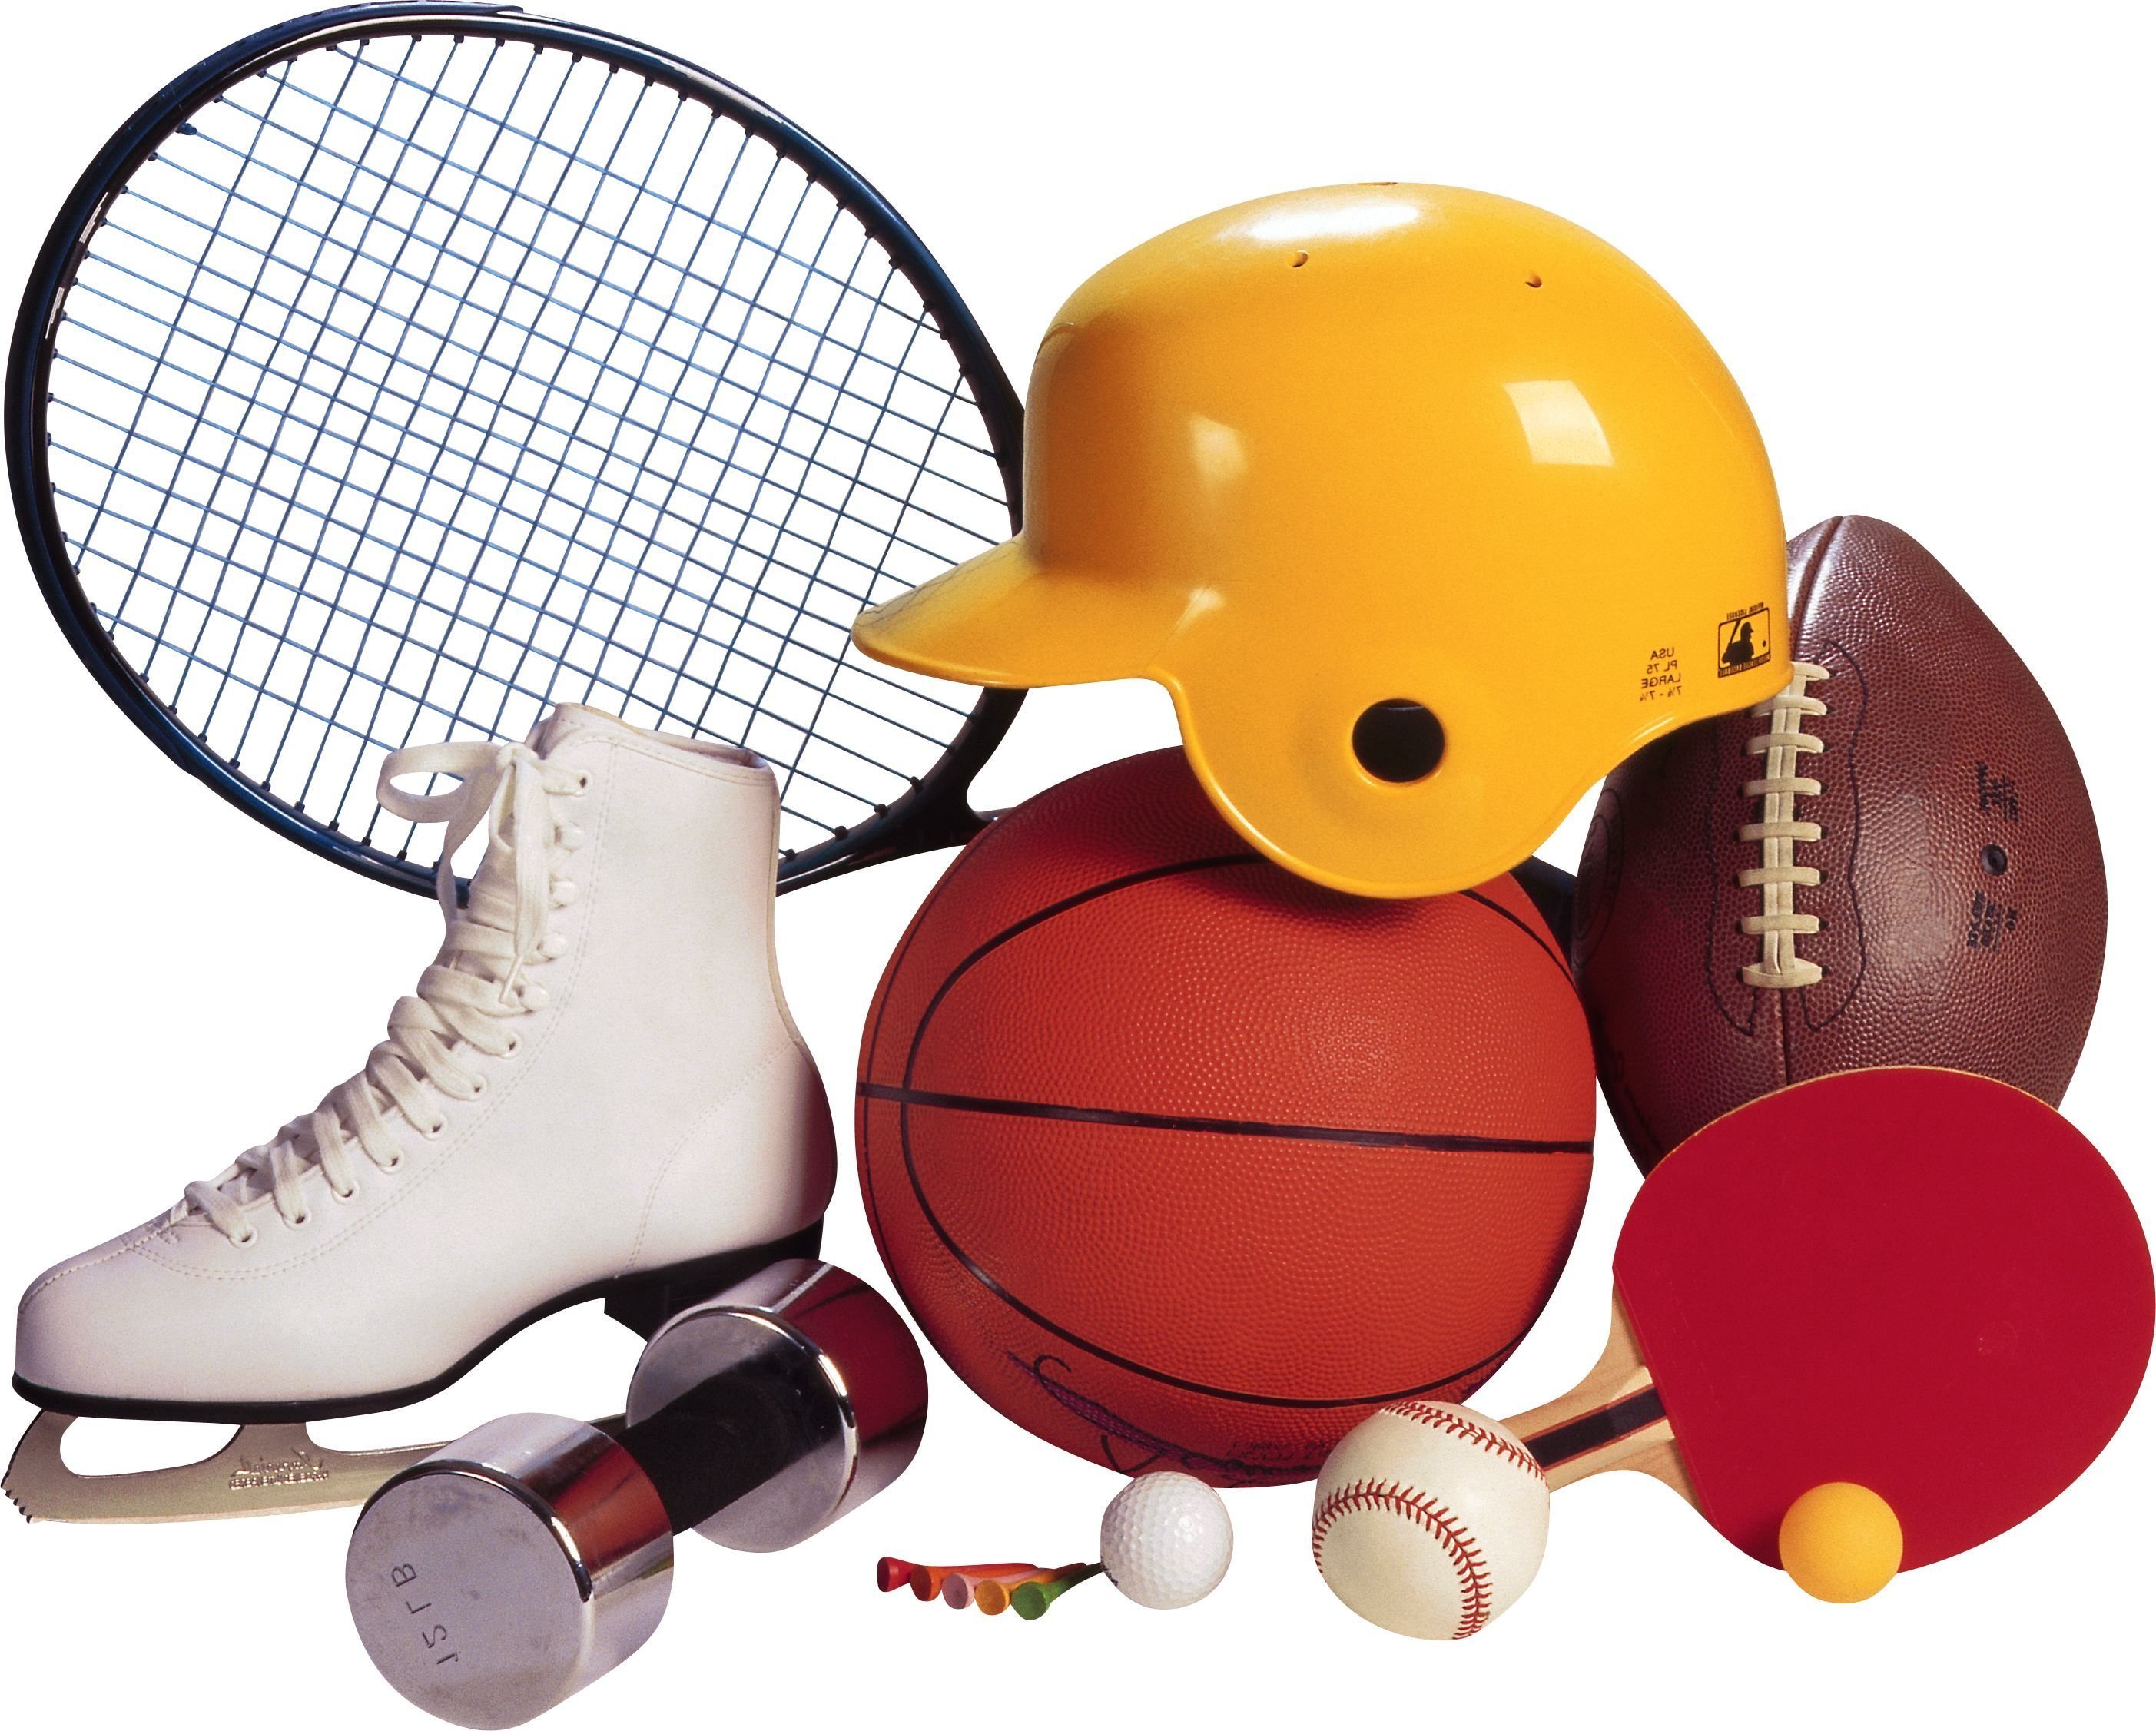 Проект спортивный инвентарь. Спортивный инвентарь. Спортинвентарь для детей. Спортивные предметы. Спортивные атрибуты.